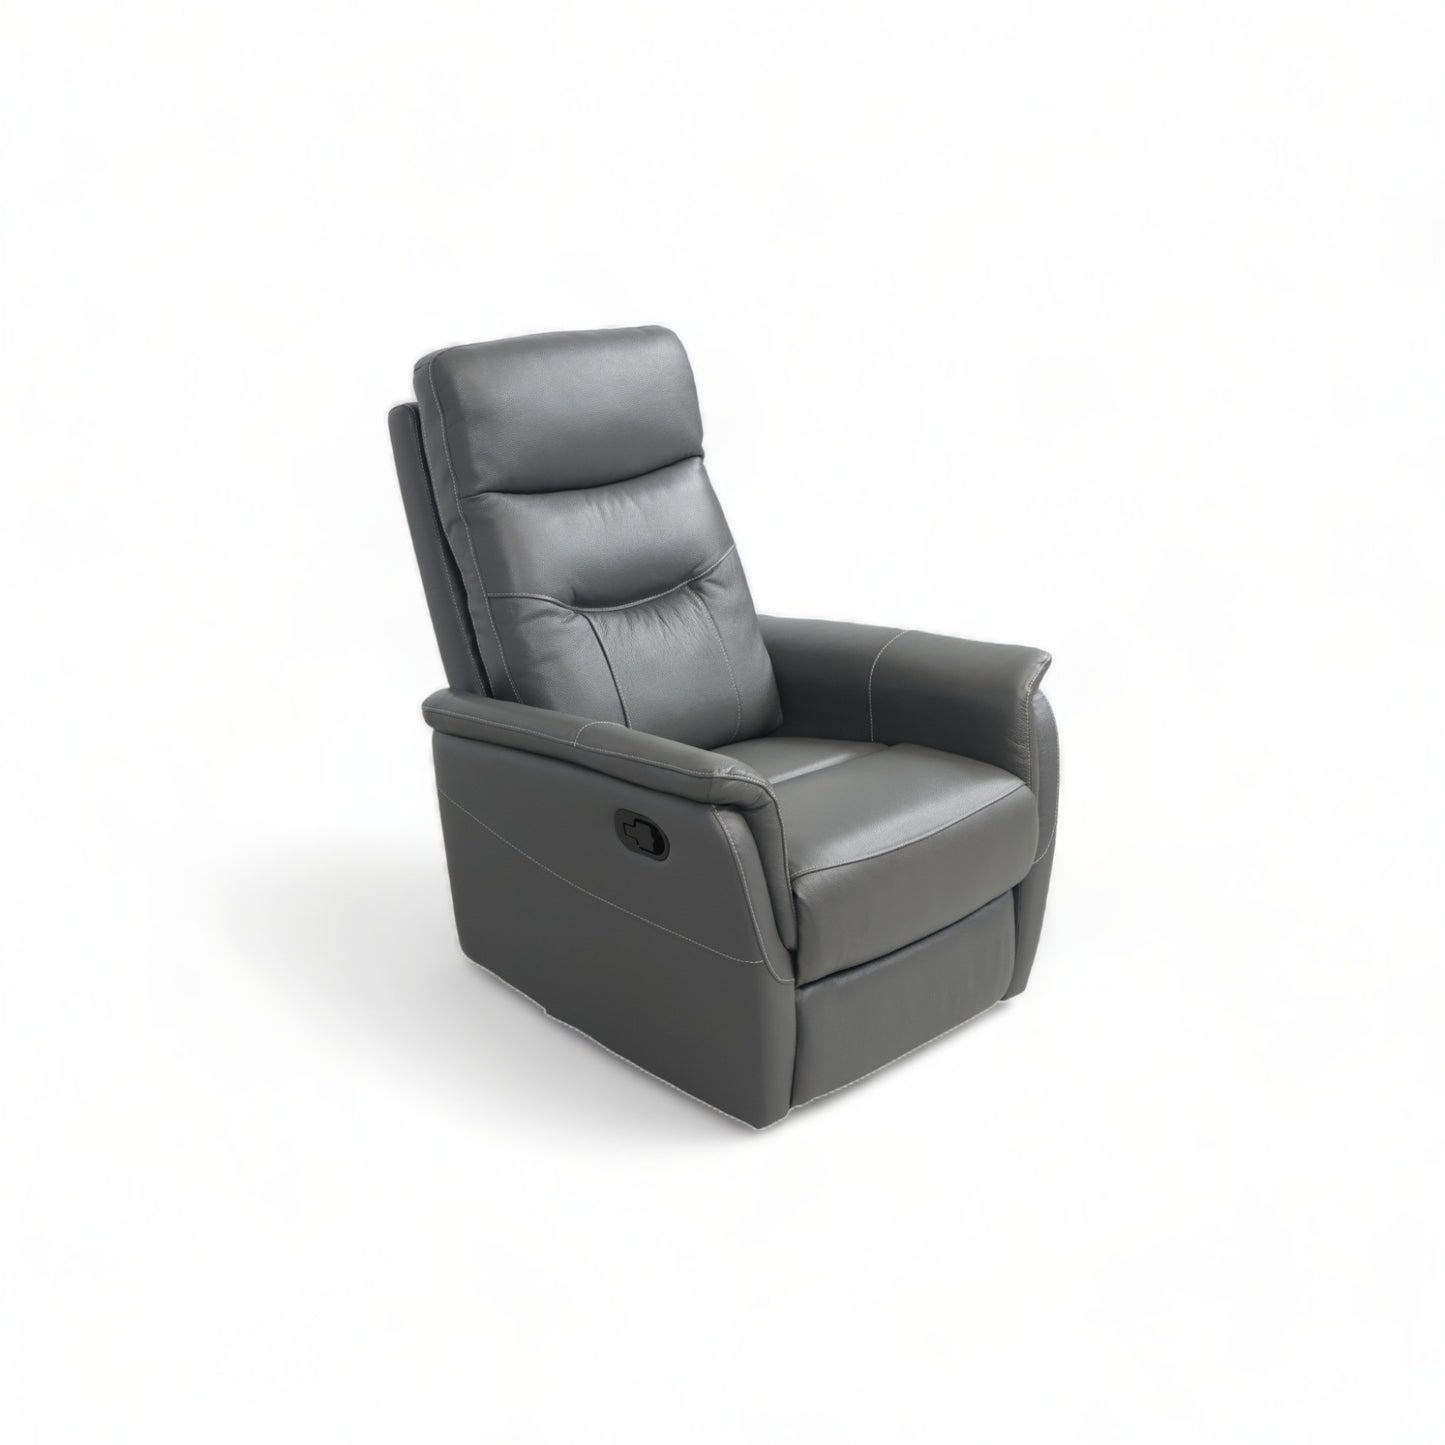 Nyrenset | Mørk grå lenestol i skinn med recliner